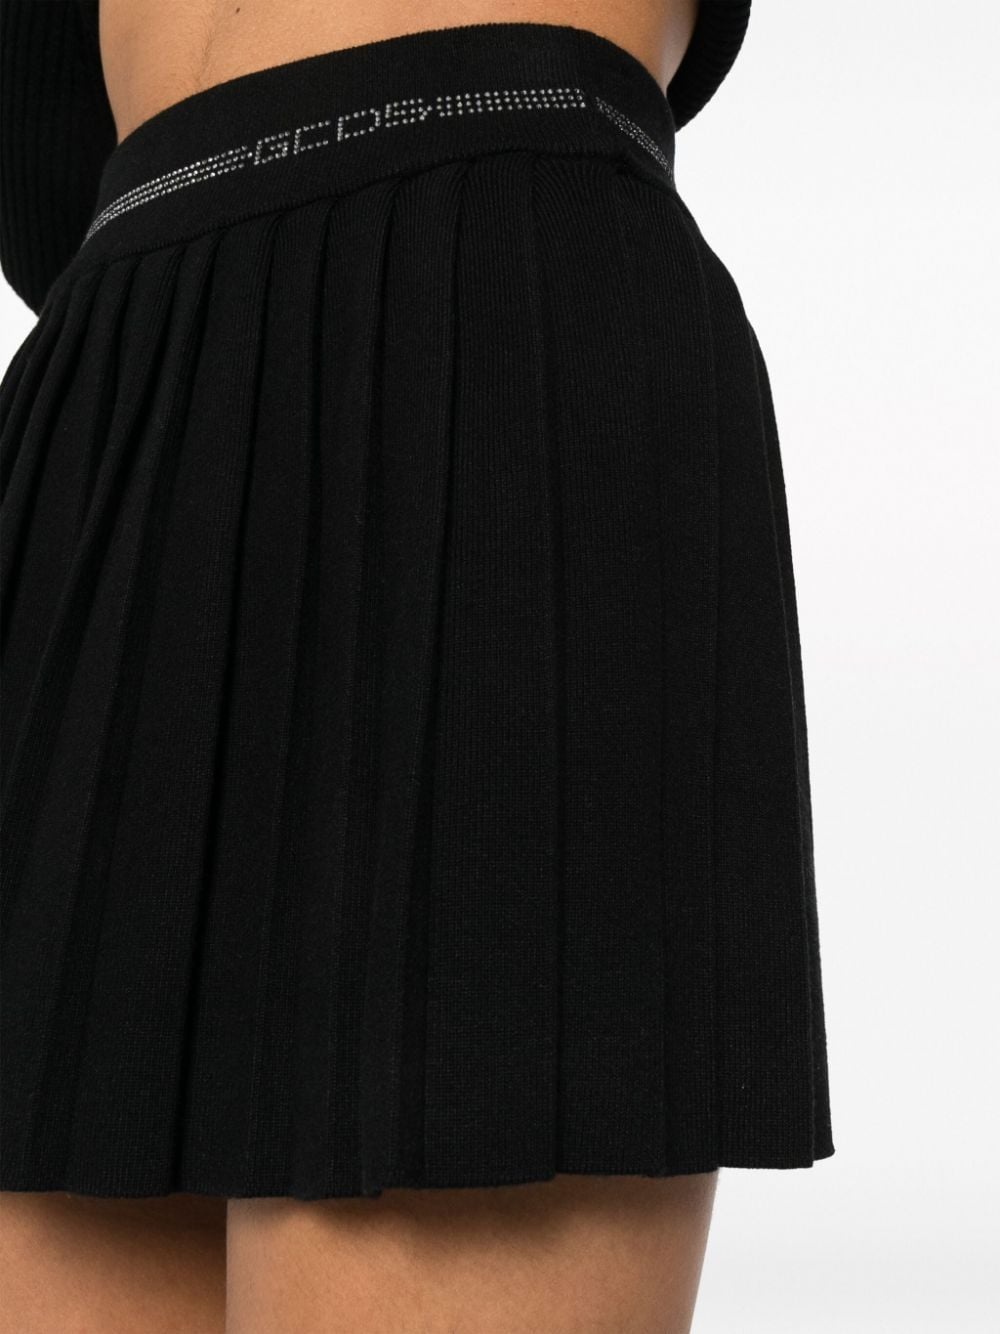 Bling pleated miniskirt - 5